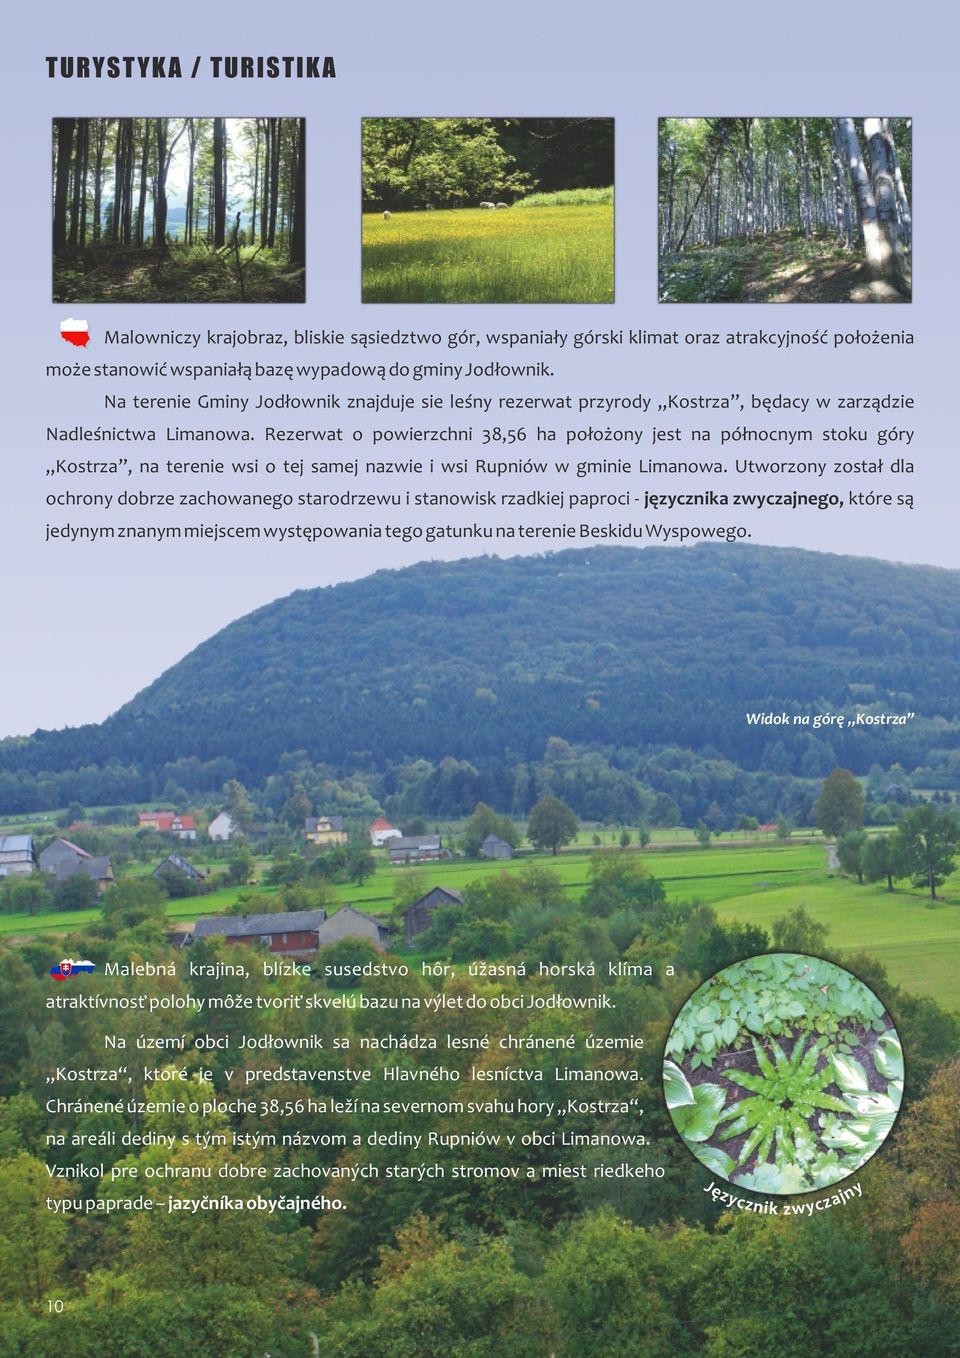 Rezerwat o powierzchni 38,56 ha położony jest na północnym stoku góry Kostrza, na terenie wsi o tej samej nazwie i wsi Rupniów w gminie Limanowa.